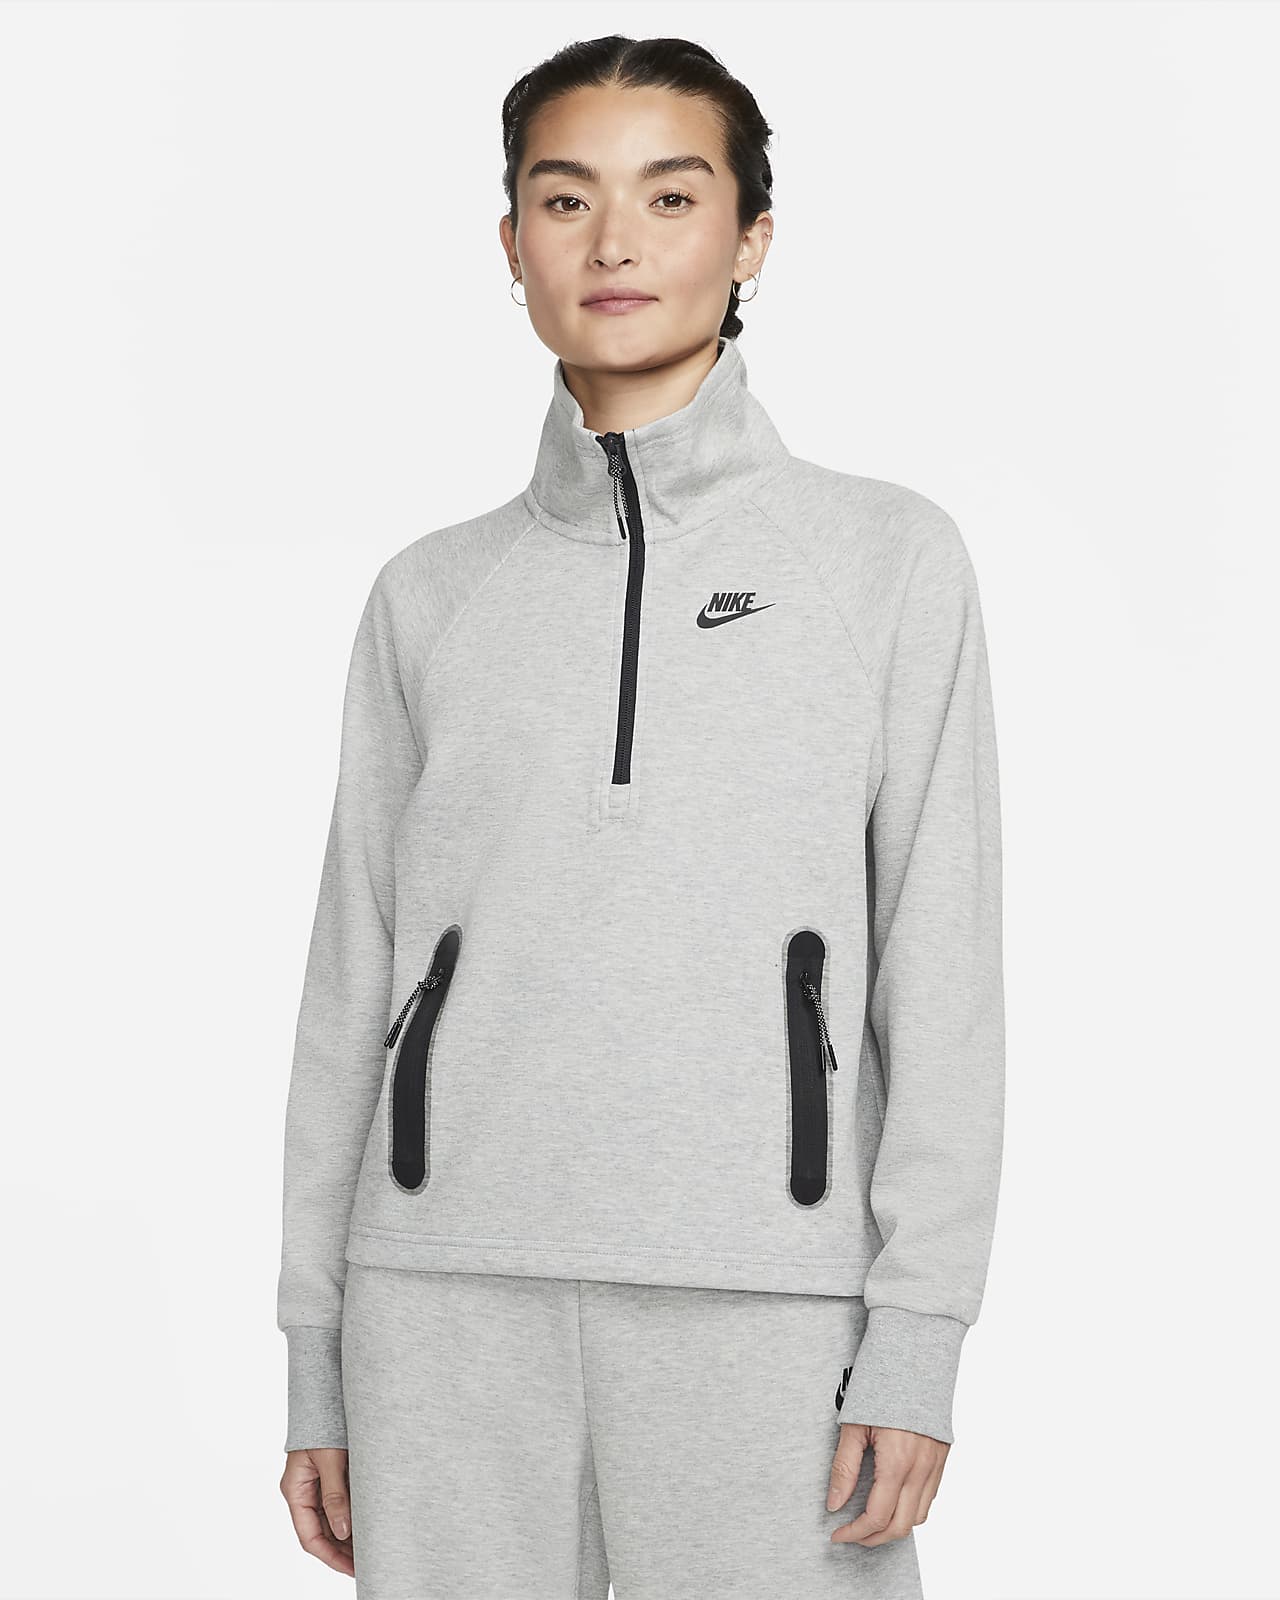 Nike Sportswear Tech Fleece 女子上衣